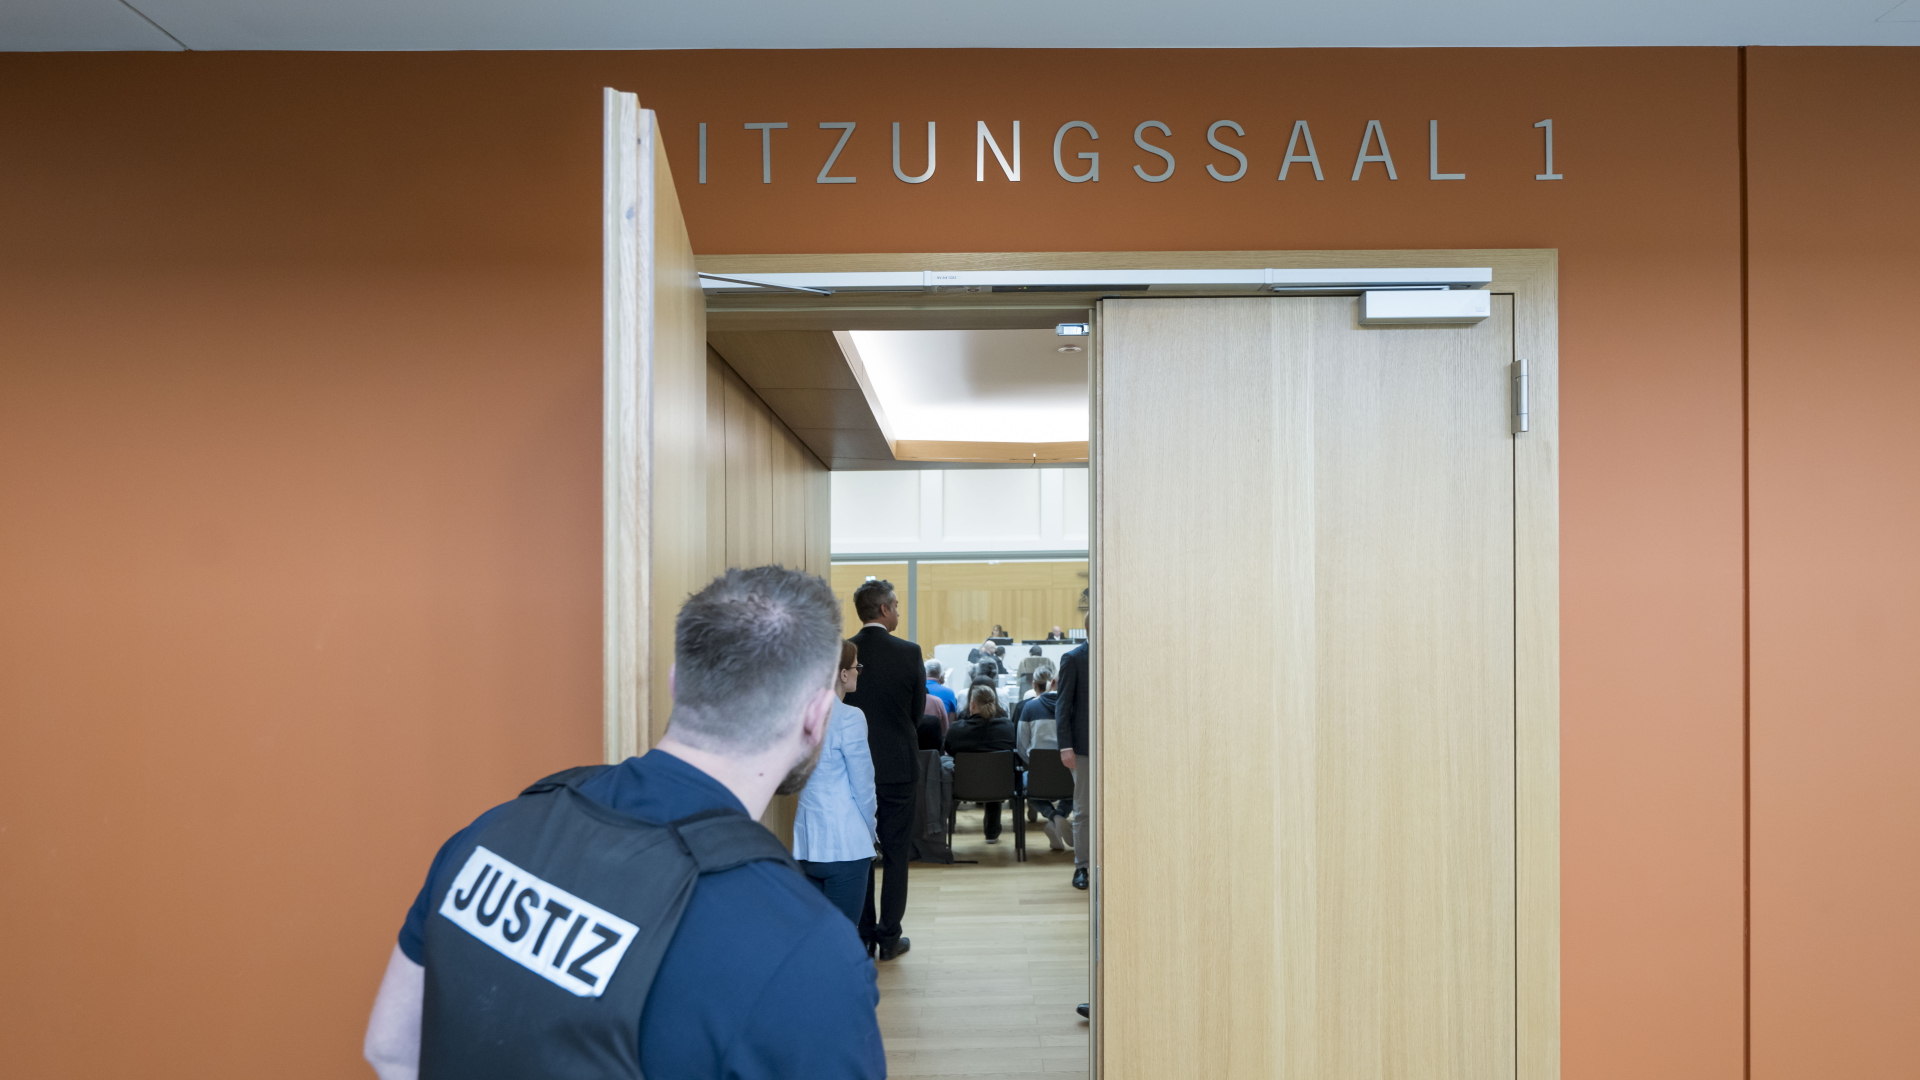 Ein Justiz-Beamter hält die Tür zum Sitzungsaal 1 des Oberlandesgerichts Stuttgart offen.